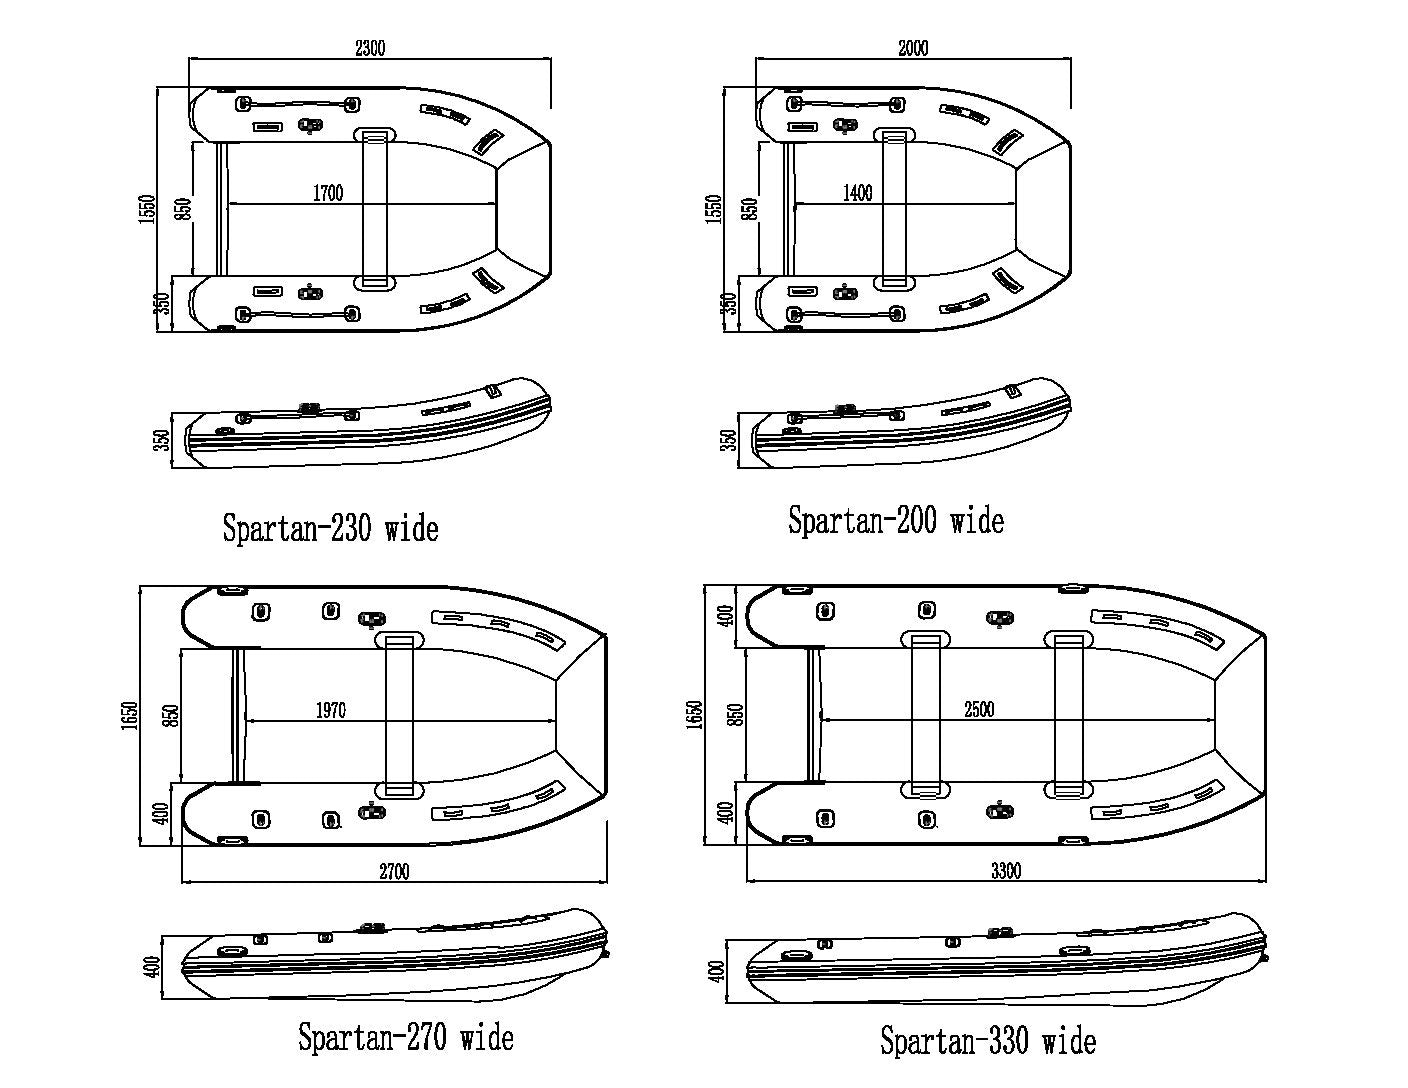 Spartan 270 Wide - Spartan Boats - spartan wide - Spartan Boats -